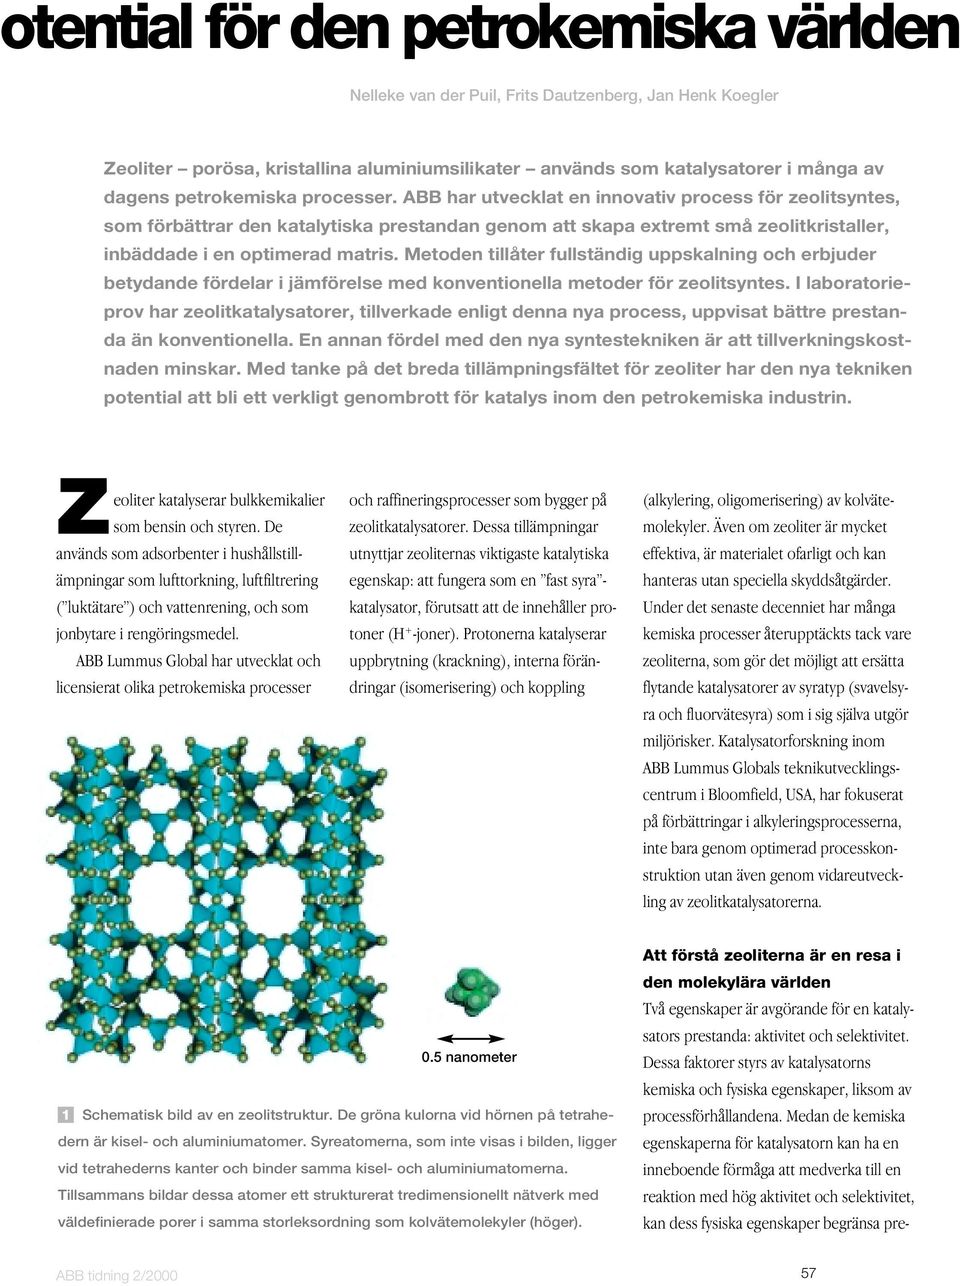 ABB har utvecklat en innovativ process för zeolitsyntes, som förbättrar den katalytiska prestandan genom att skapa extremt små zeolitkristaller, inbäddade i en optimerad matris.